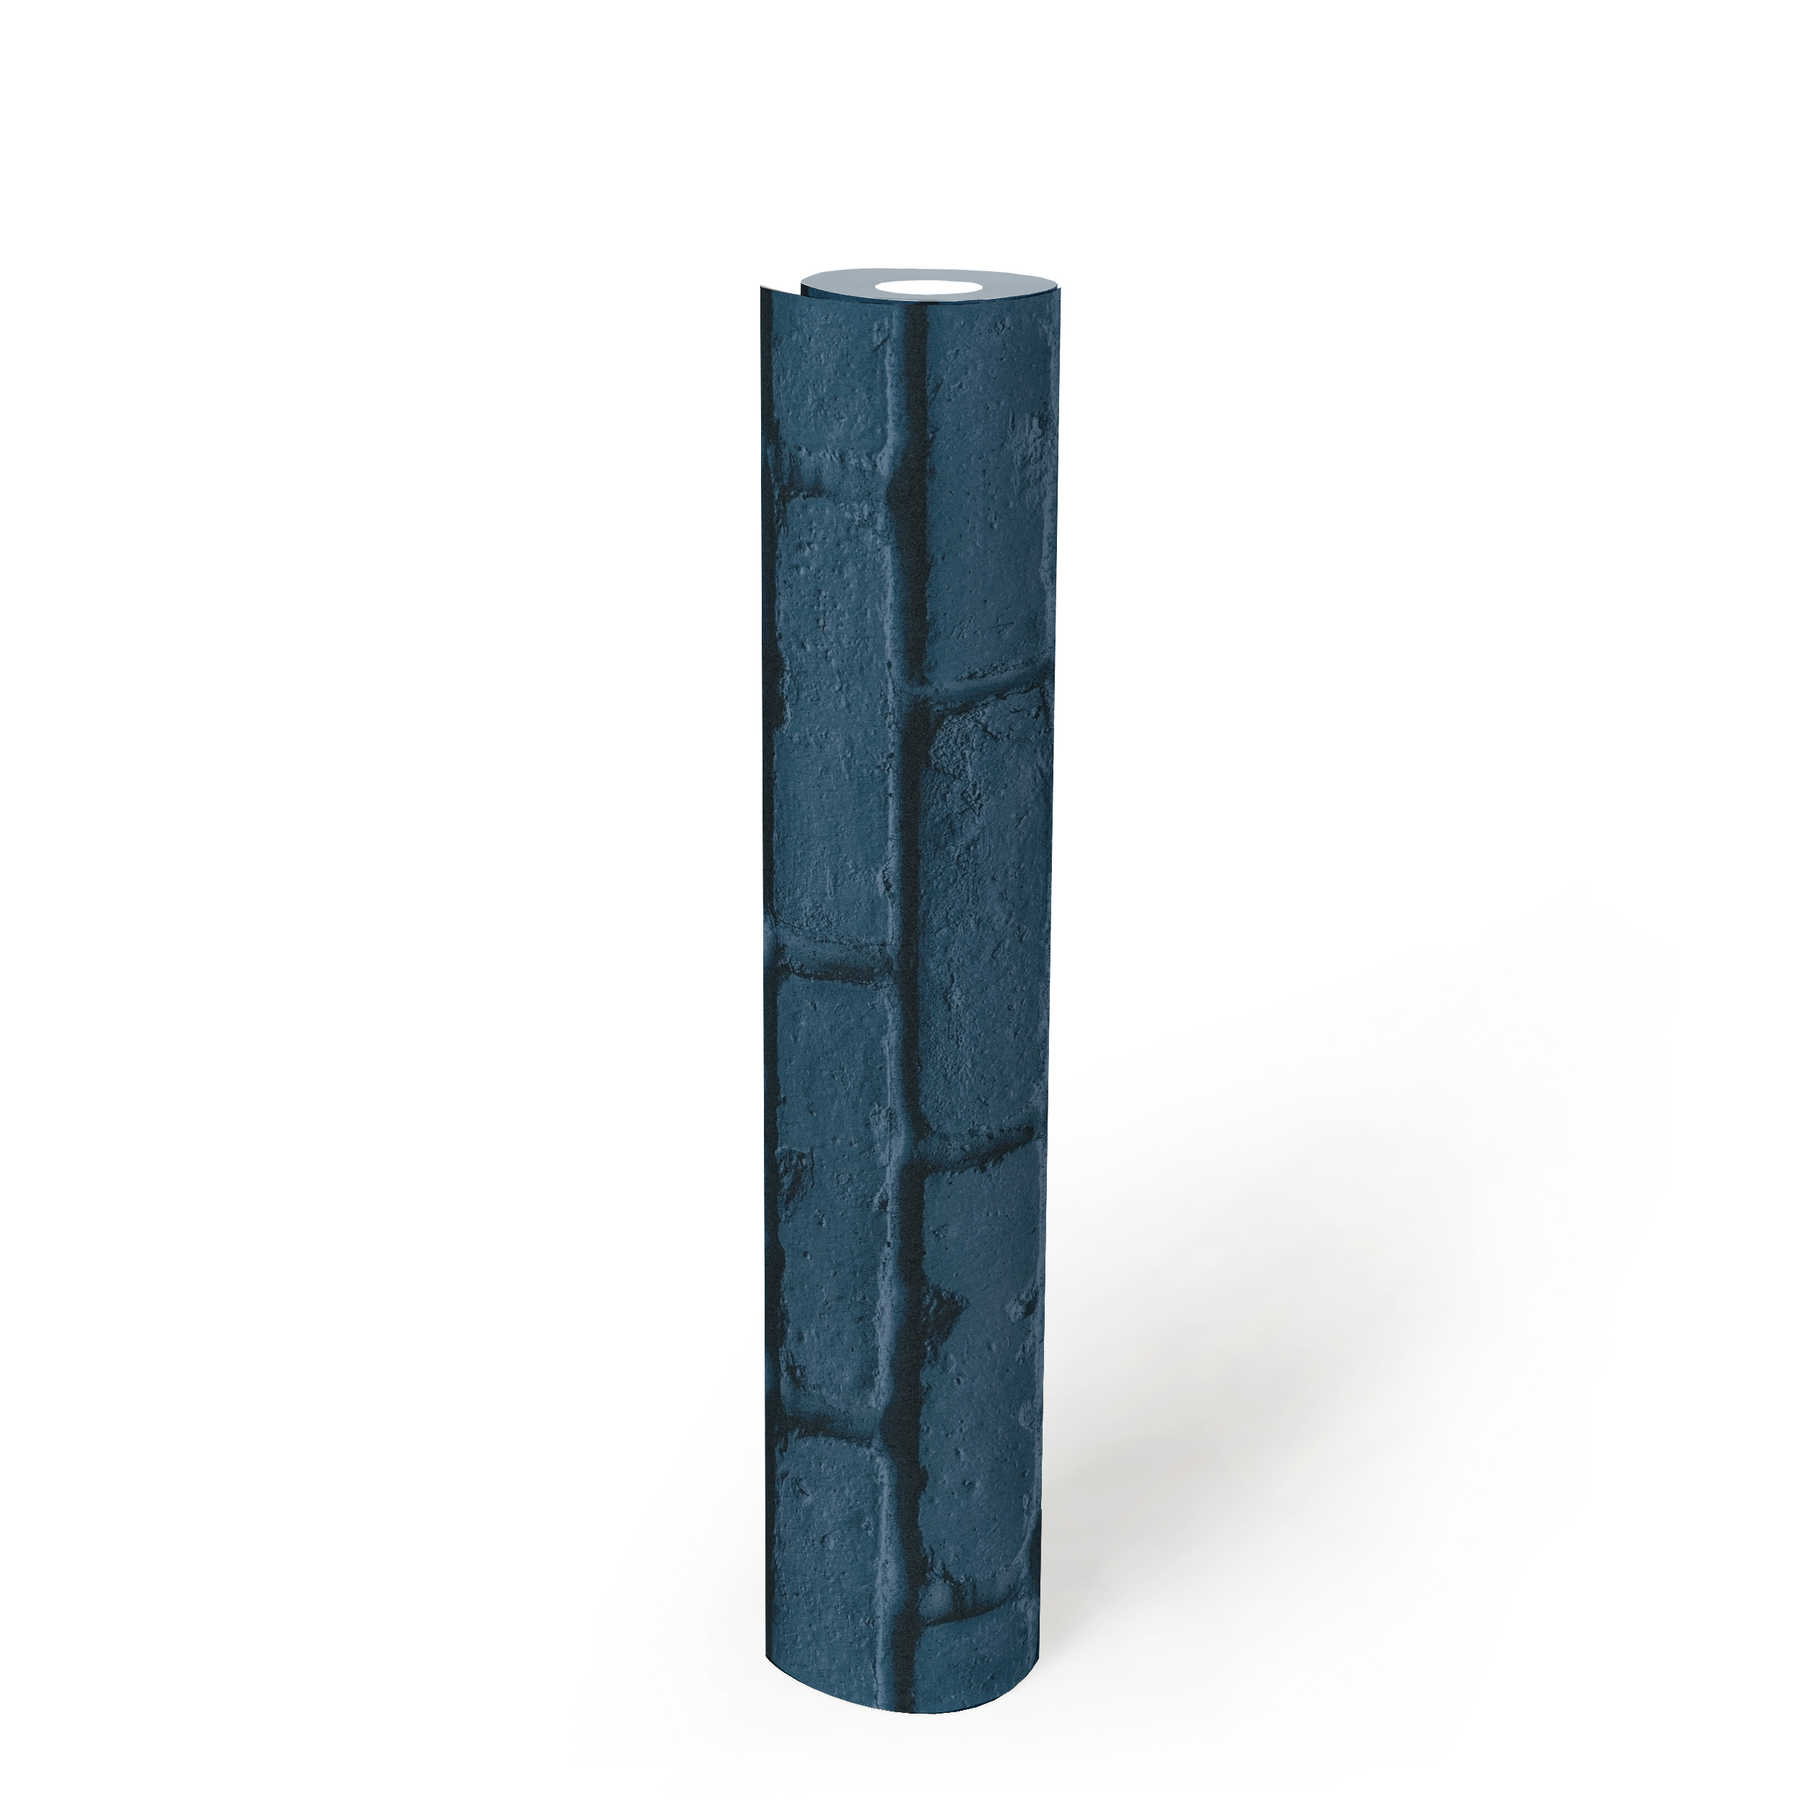             3D behang steenoptiek gekleurde bakstenen muur - blauw
        